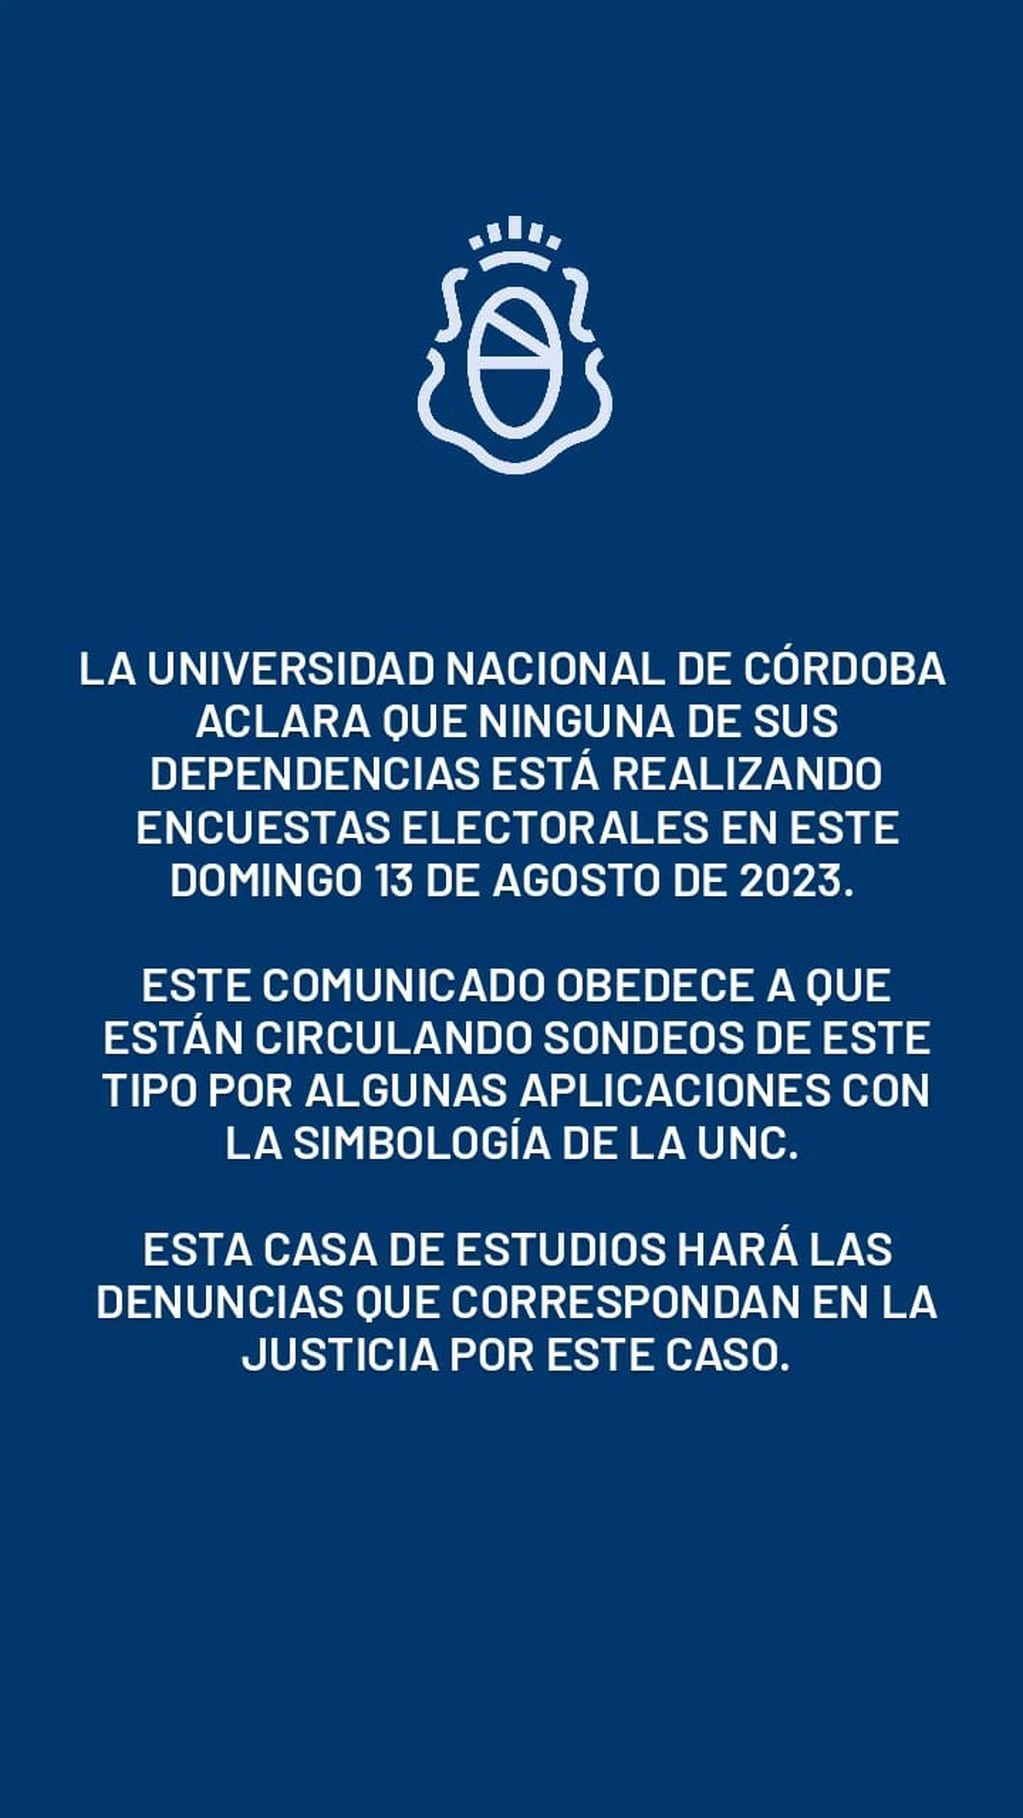 PASO. El comunicado de la UNC por el sondeo falso que circula en redes (Prensa UNC).